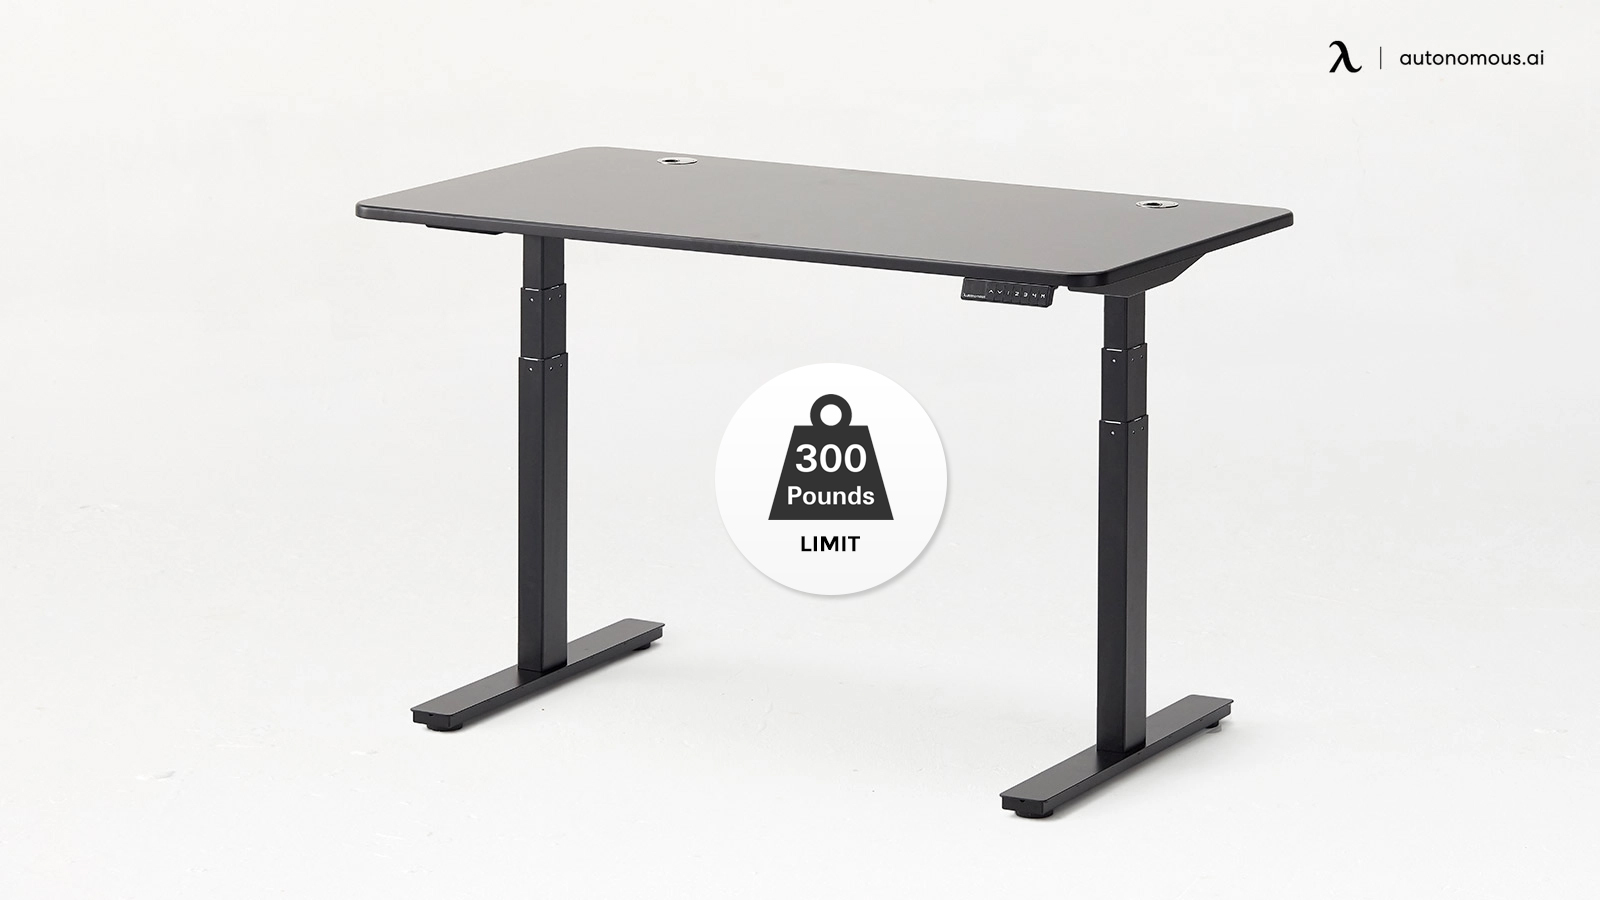 Weight limit on desk